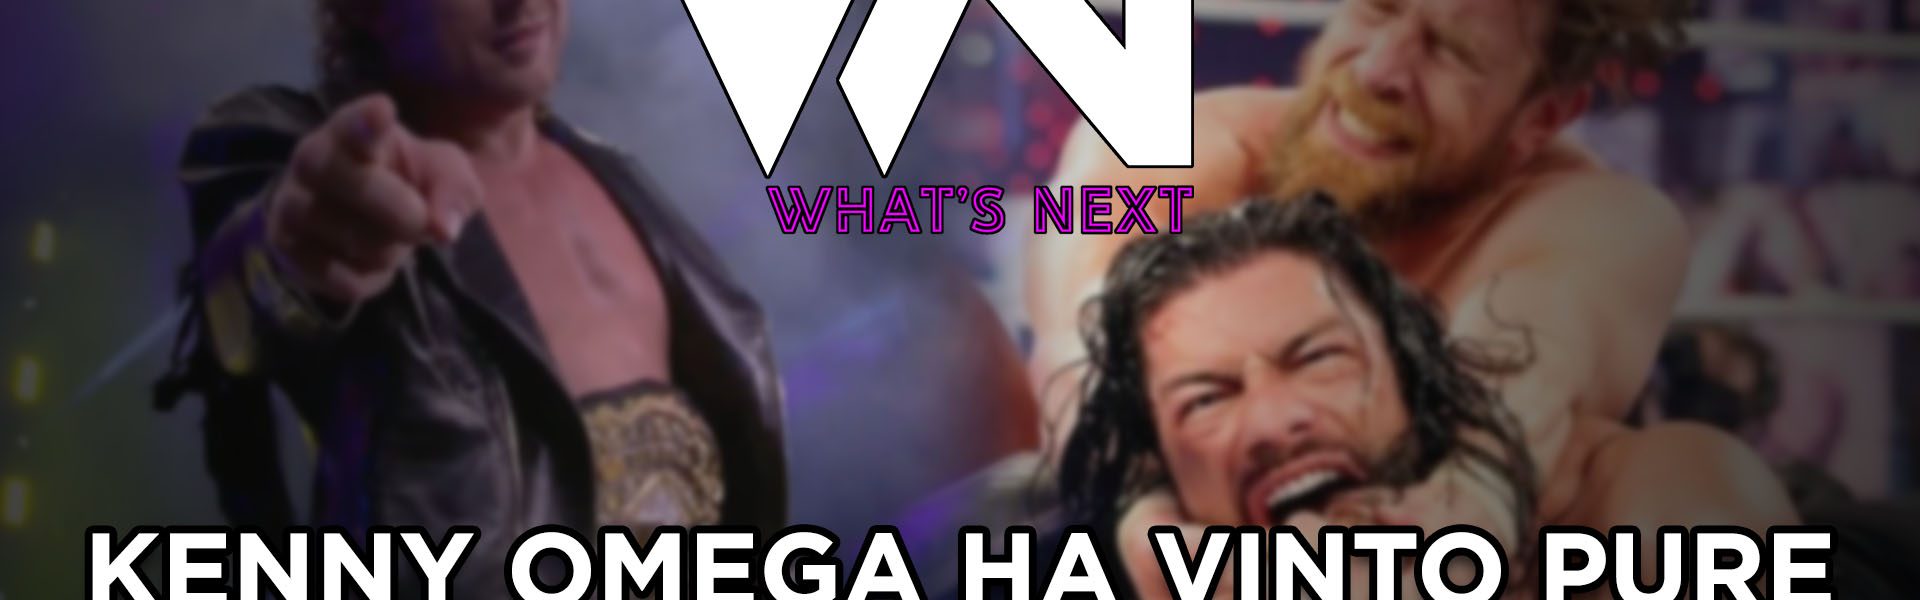 Kenny Omega ha vinto pure il titolo di questa puntata - What's Next #117